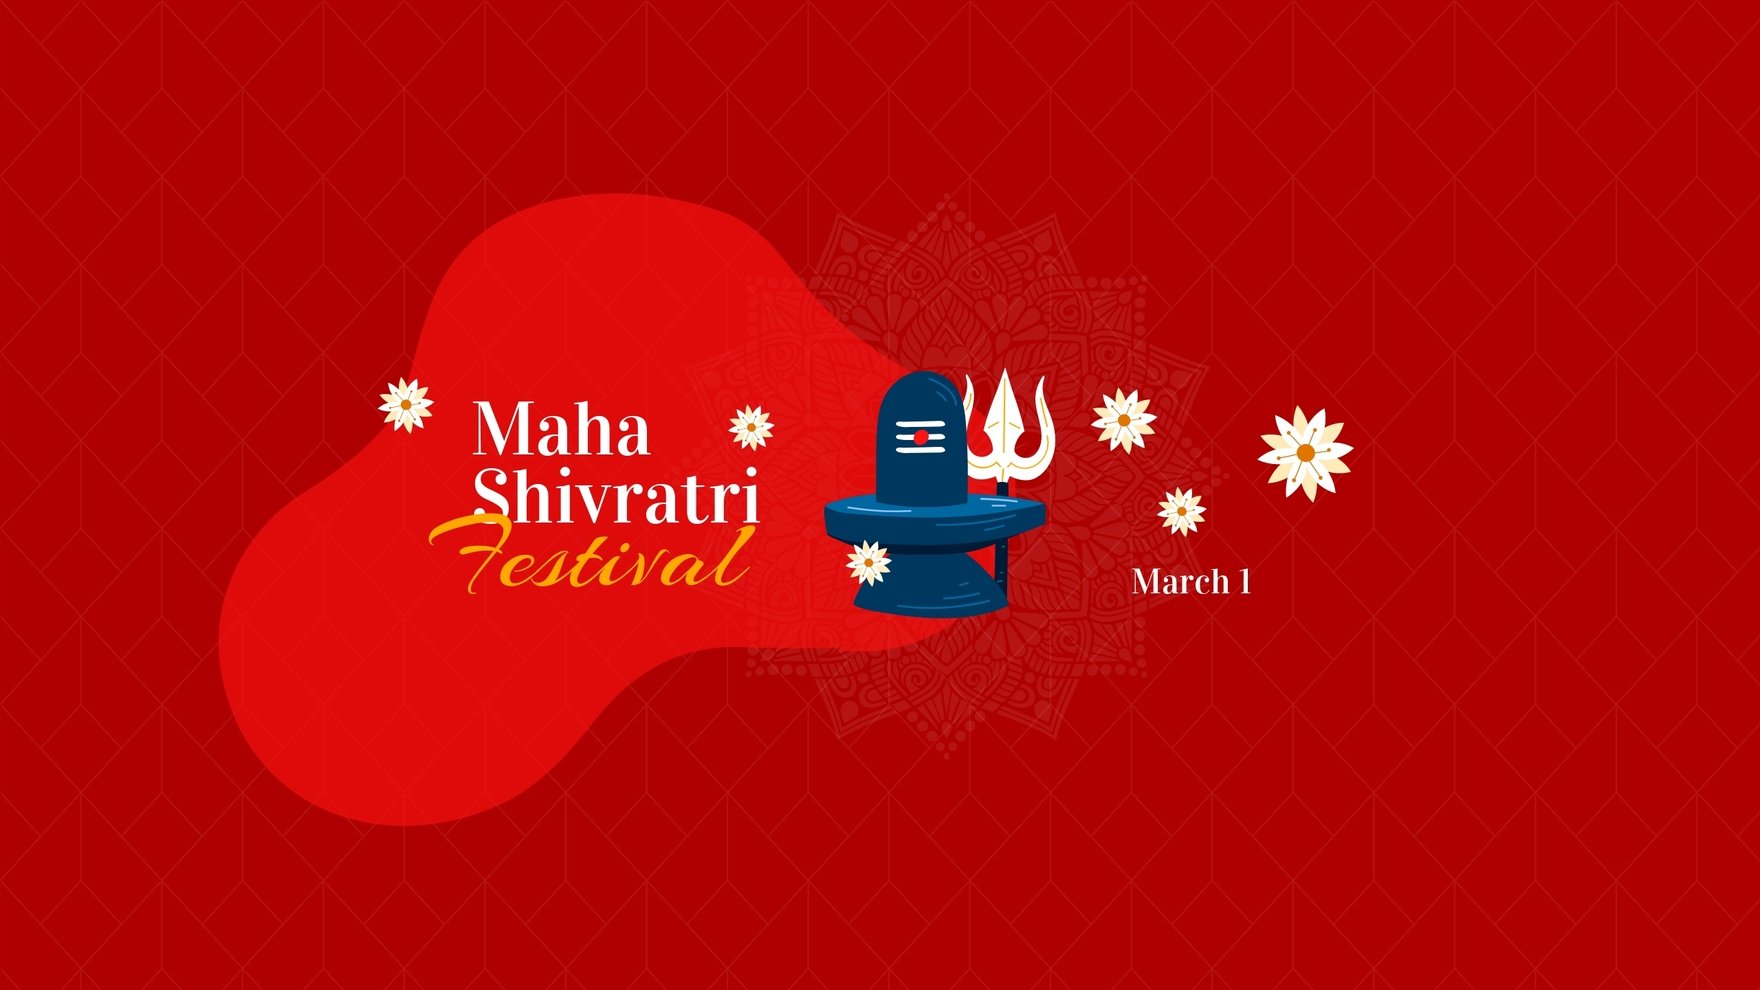 Hãy tải về miễn phí thiết kế Maha Shivratri Template để tưởng nhớ và ăn mừng lễ hội đặc biệt này. Với mẫu thiết kế độc đáo, bạn có thể thiết kế những thiệp chúc mừng đầy sáng tạo và ý nghĩa. Nhanh tay tải về để trải nghiệm!